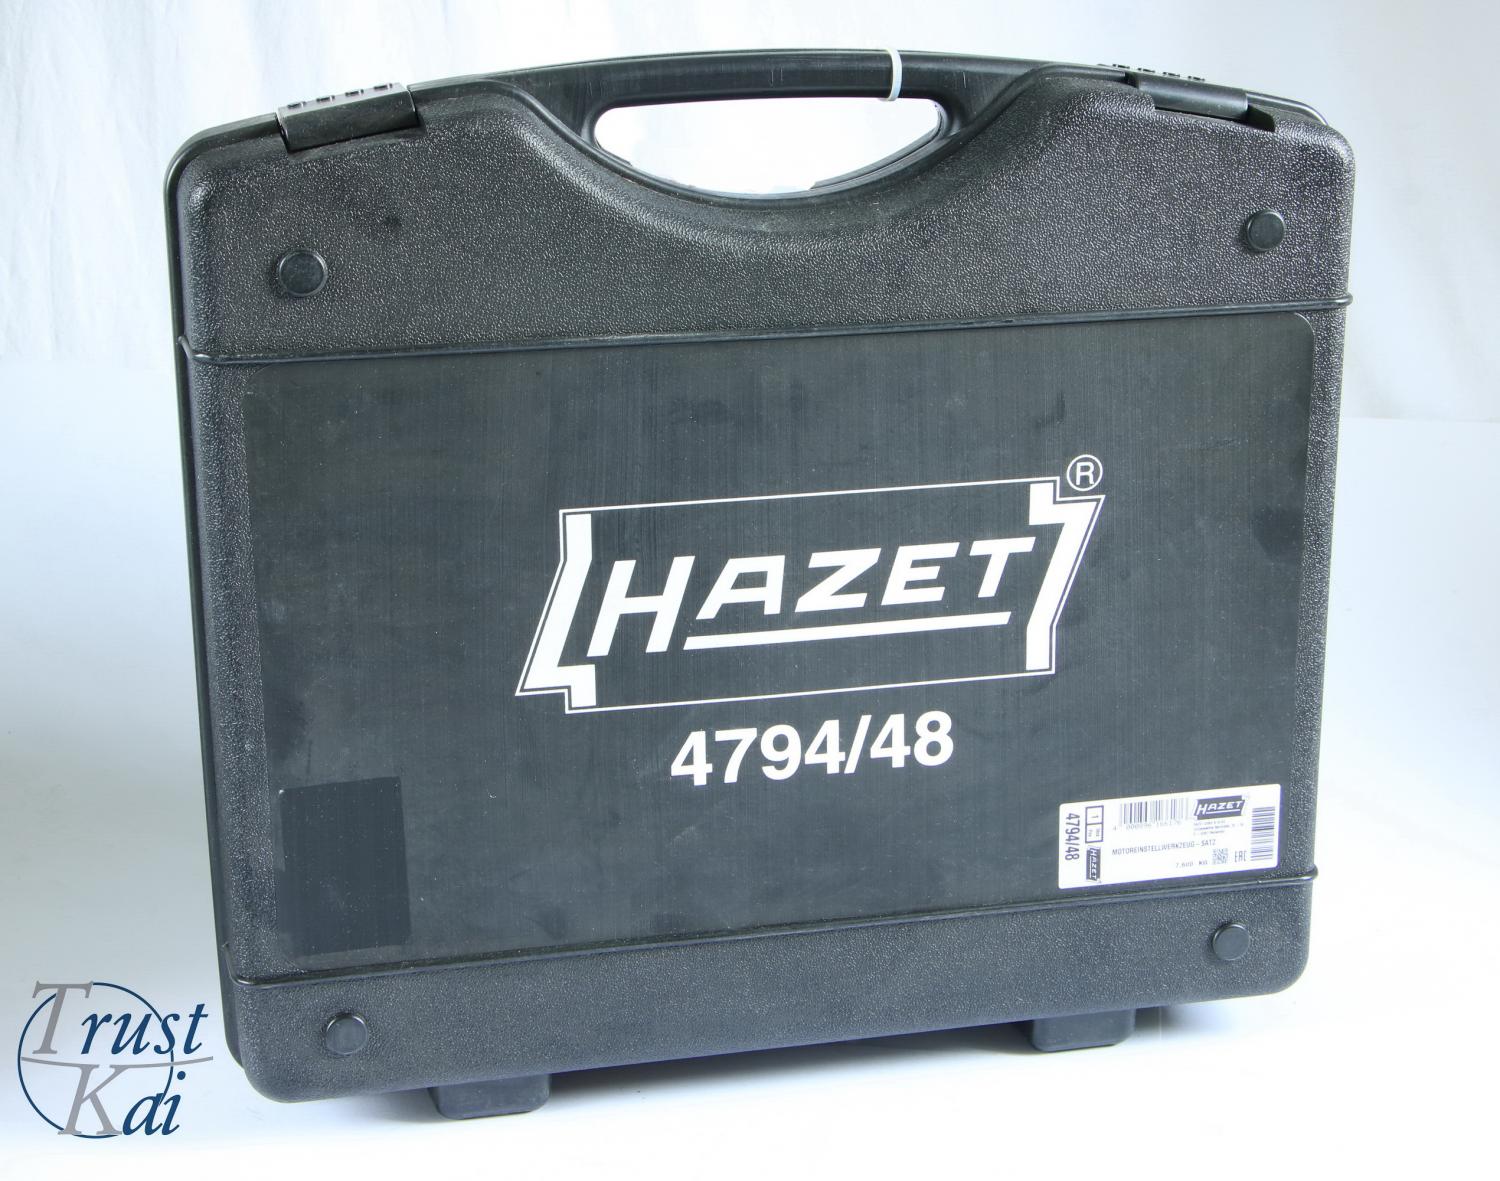 Hazet 4794/48 Universal Motoreinstellwerkzeug Satz 48-teilig inkl. Koffer